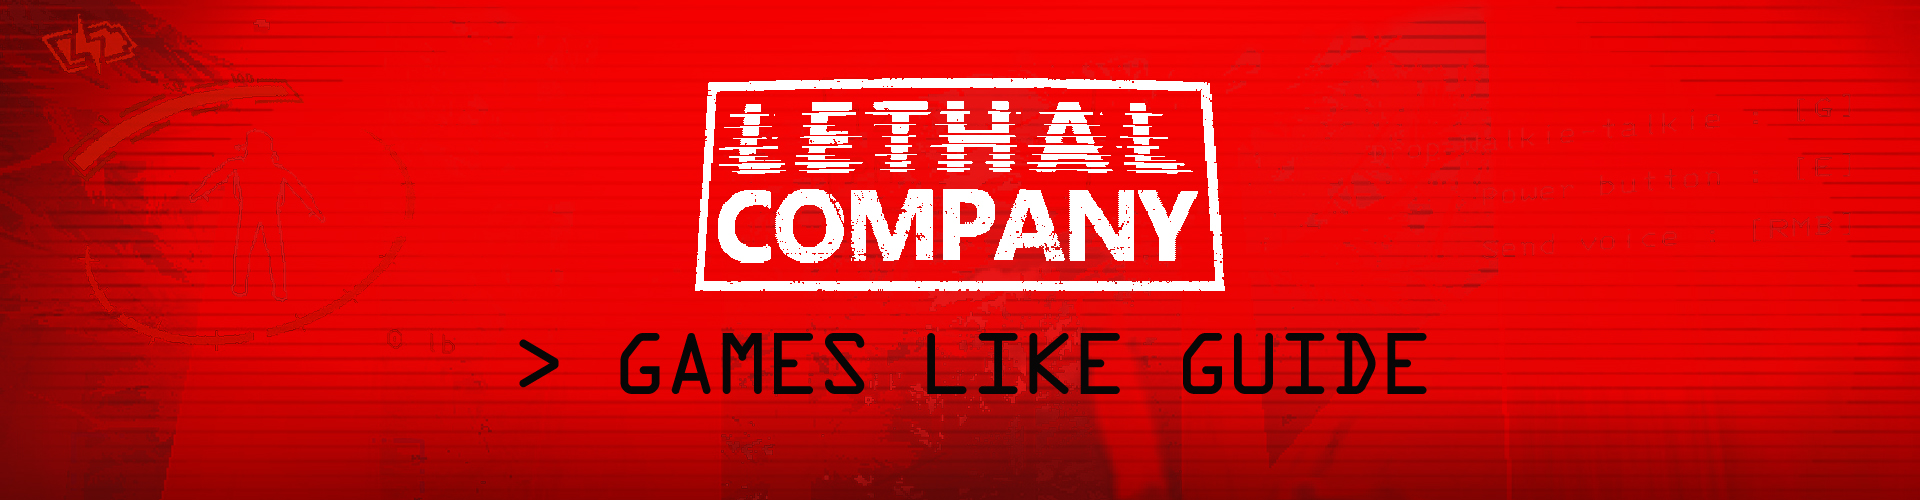 I Migliori Giochi Come Lethal Company